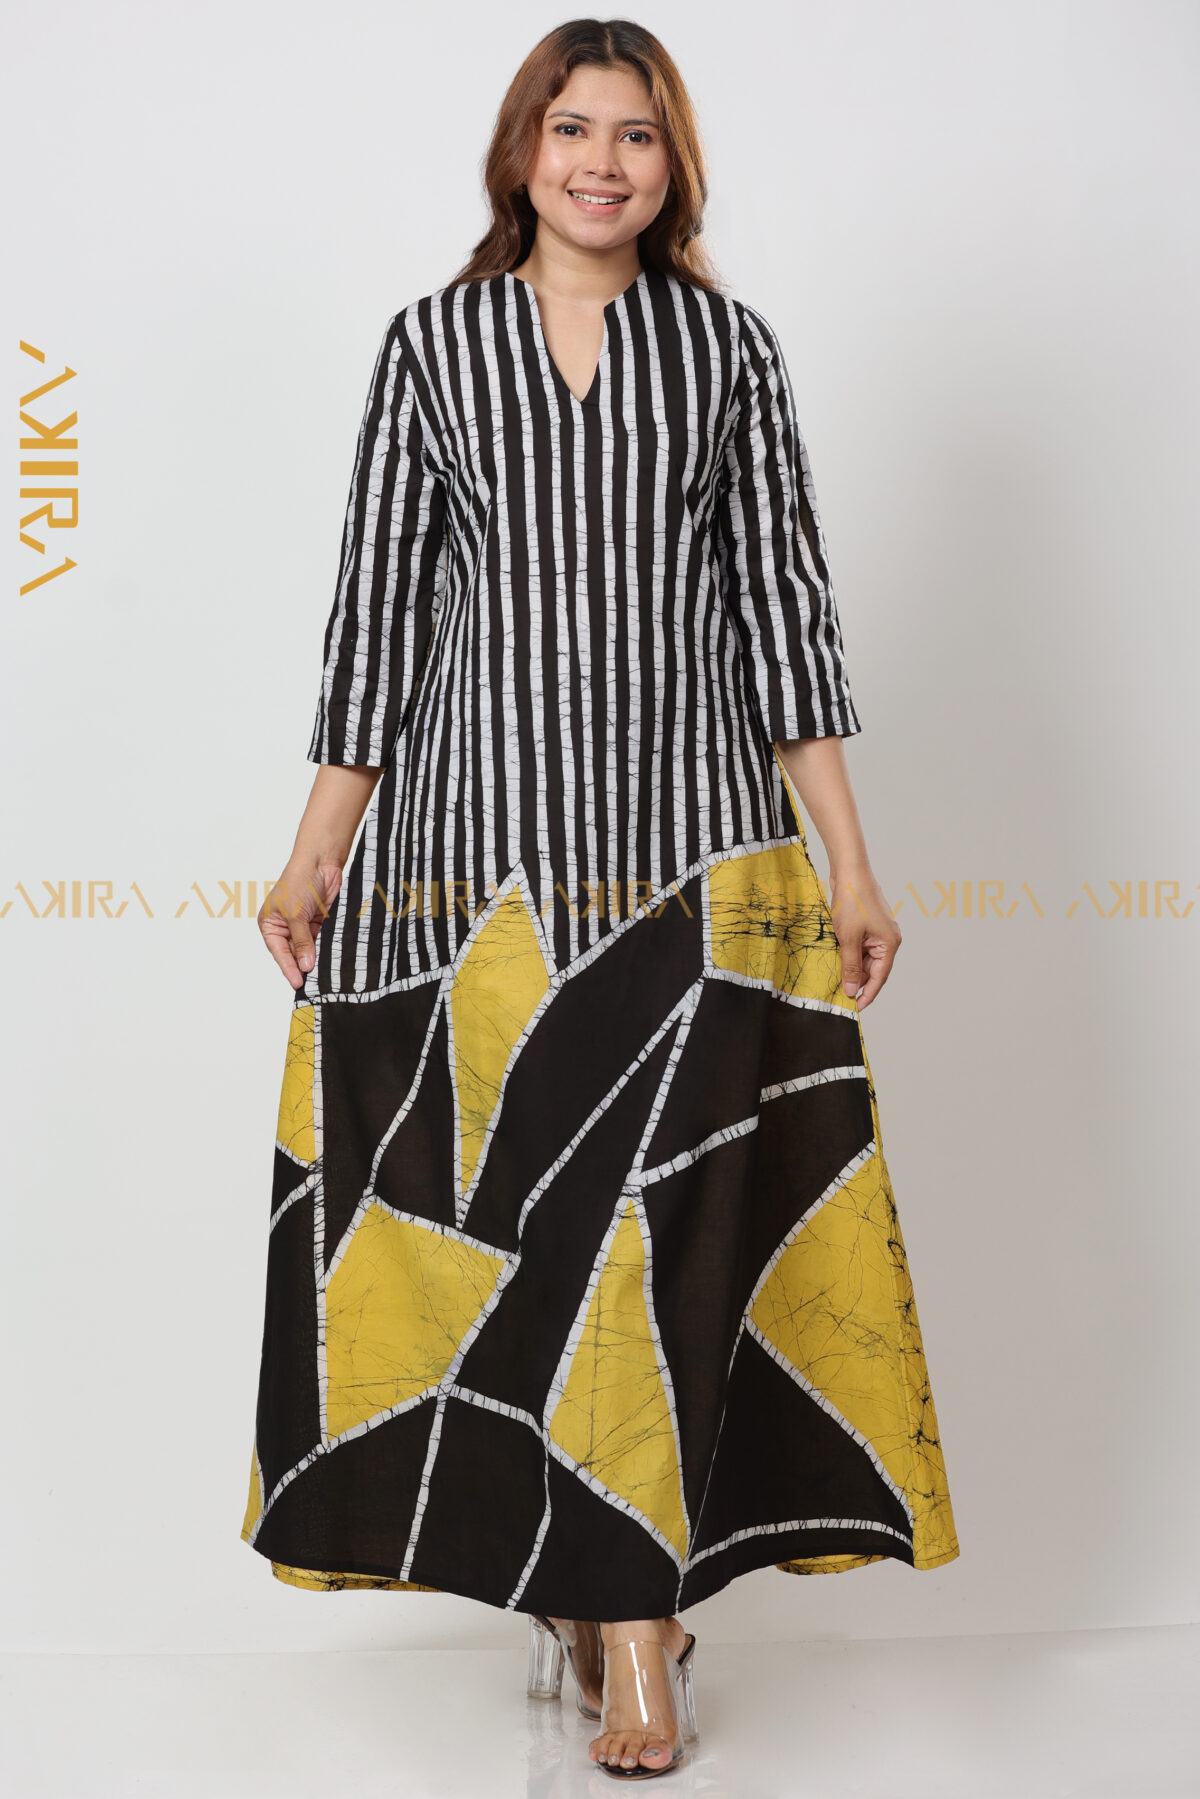 Lachenalia Batik Dress for Women